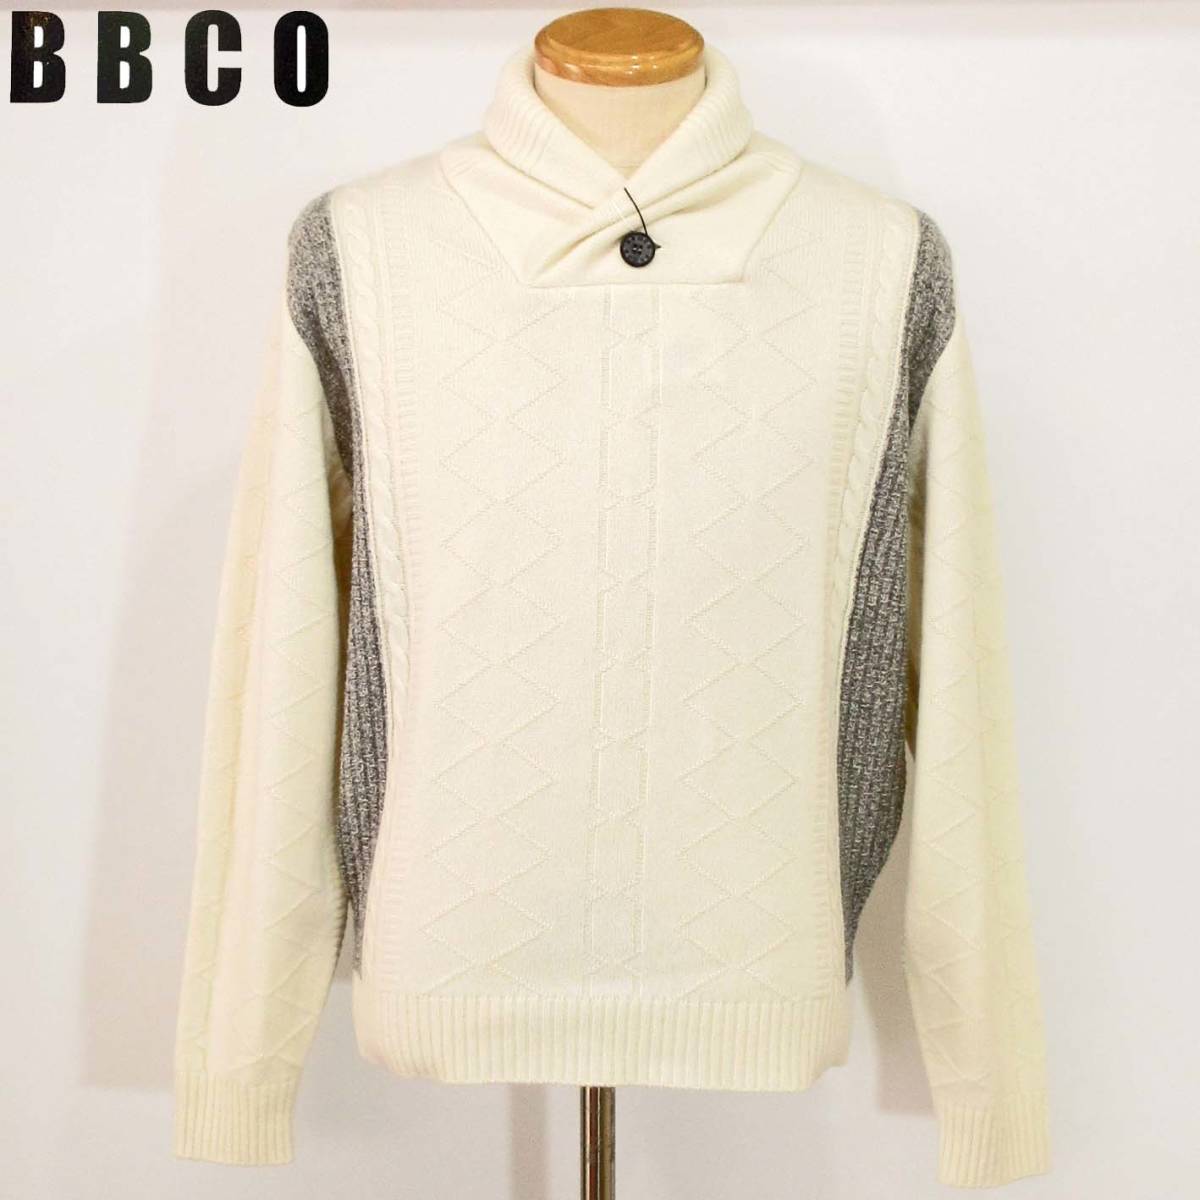 公式サイト ★BBCO★SALE ショールカラーセーター【オフホワイトLL】秋冬モデル 15740201 ビビコ XLサイズ以上